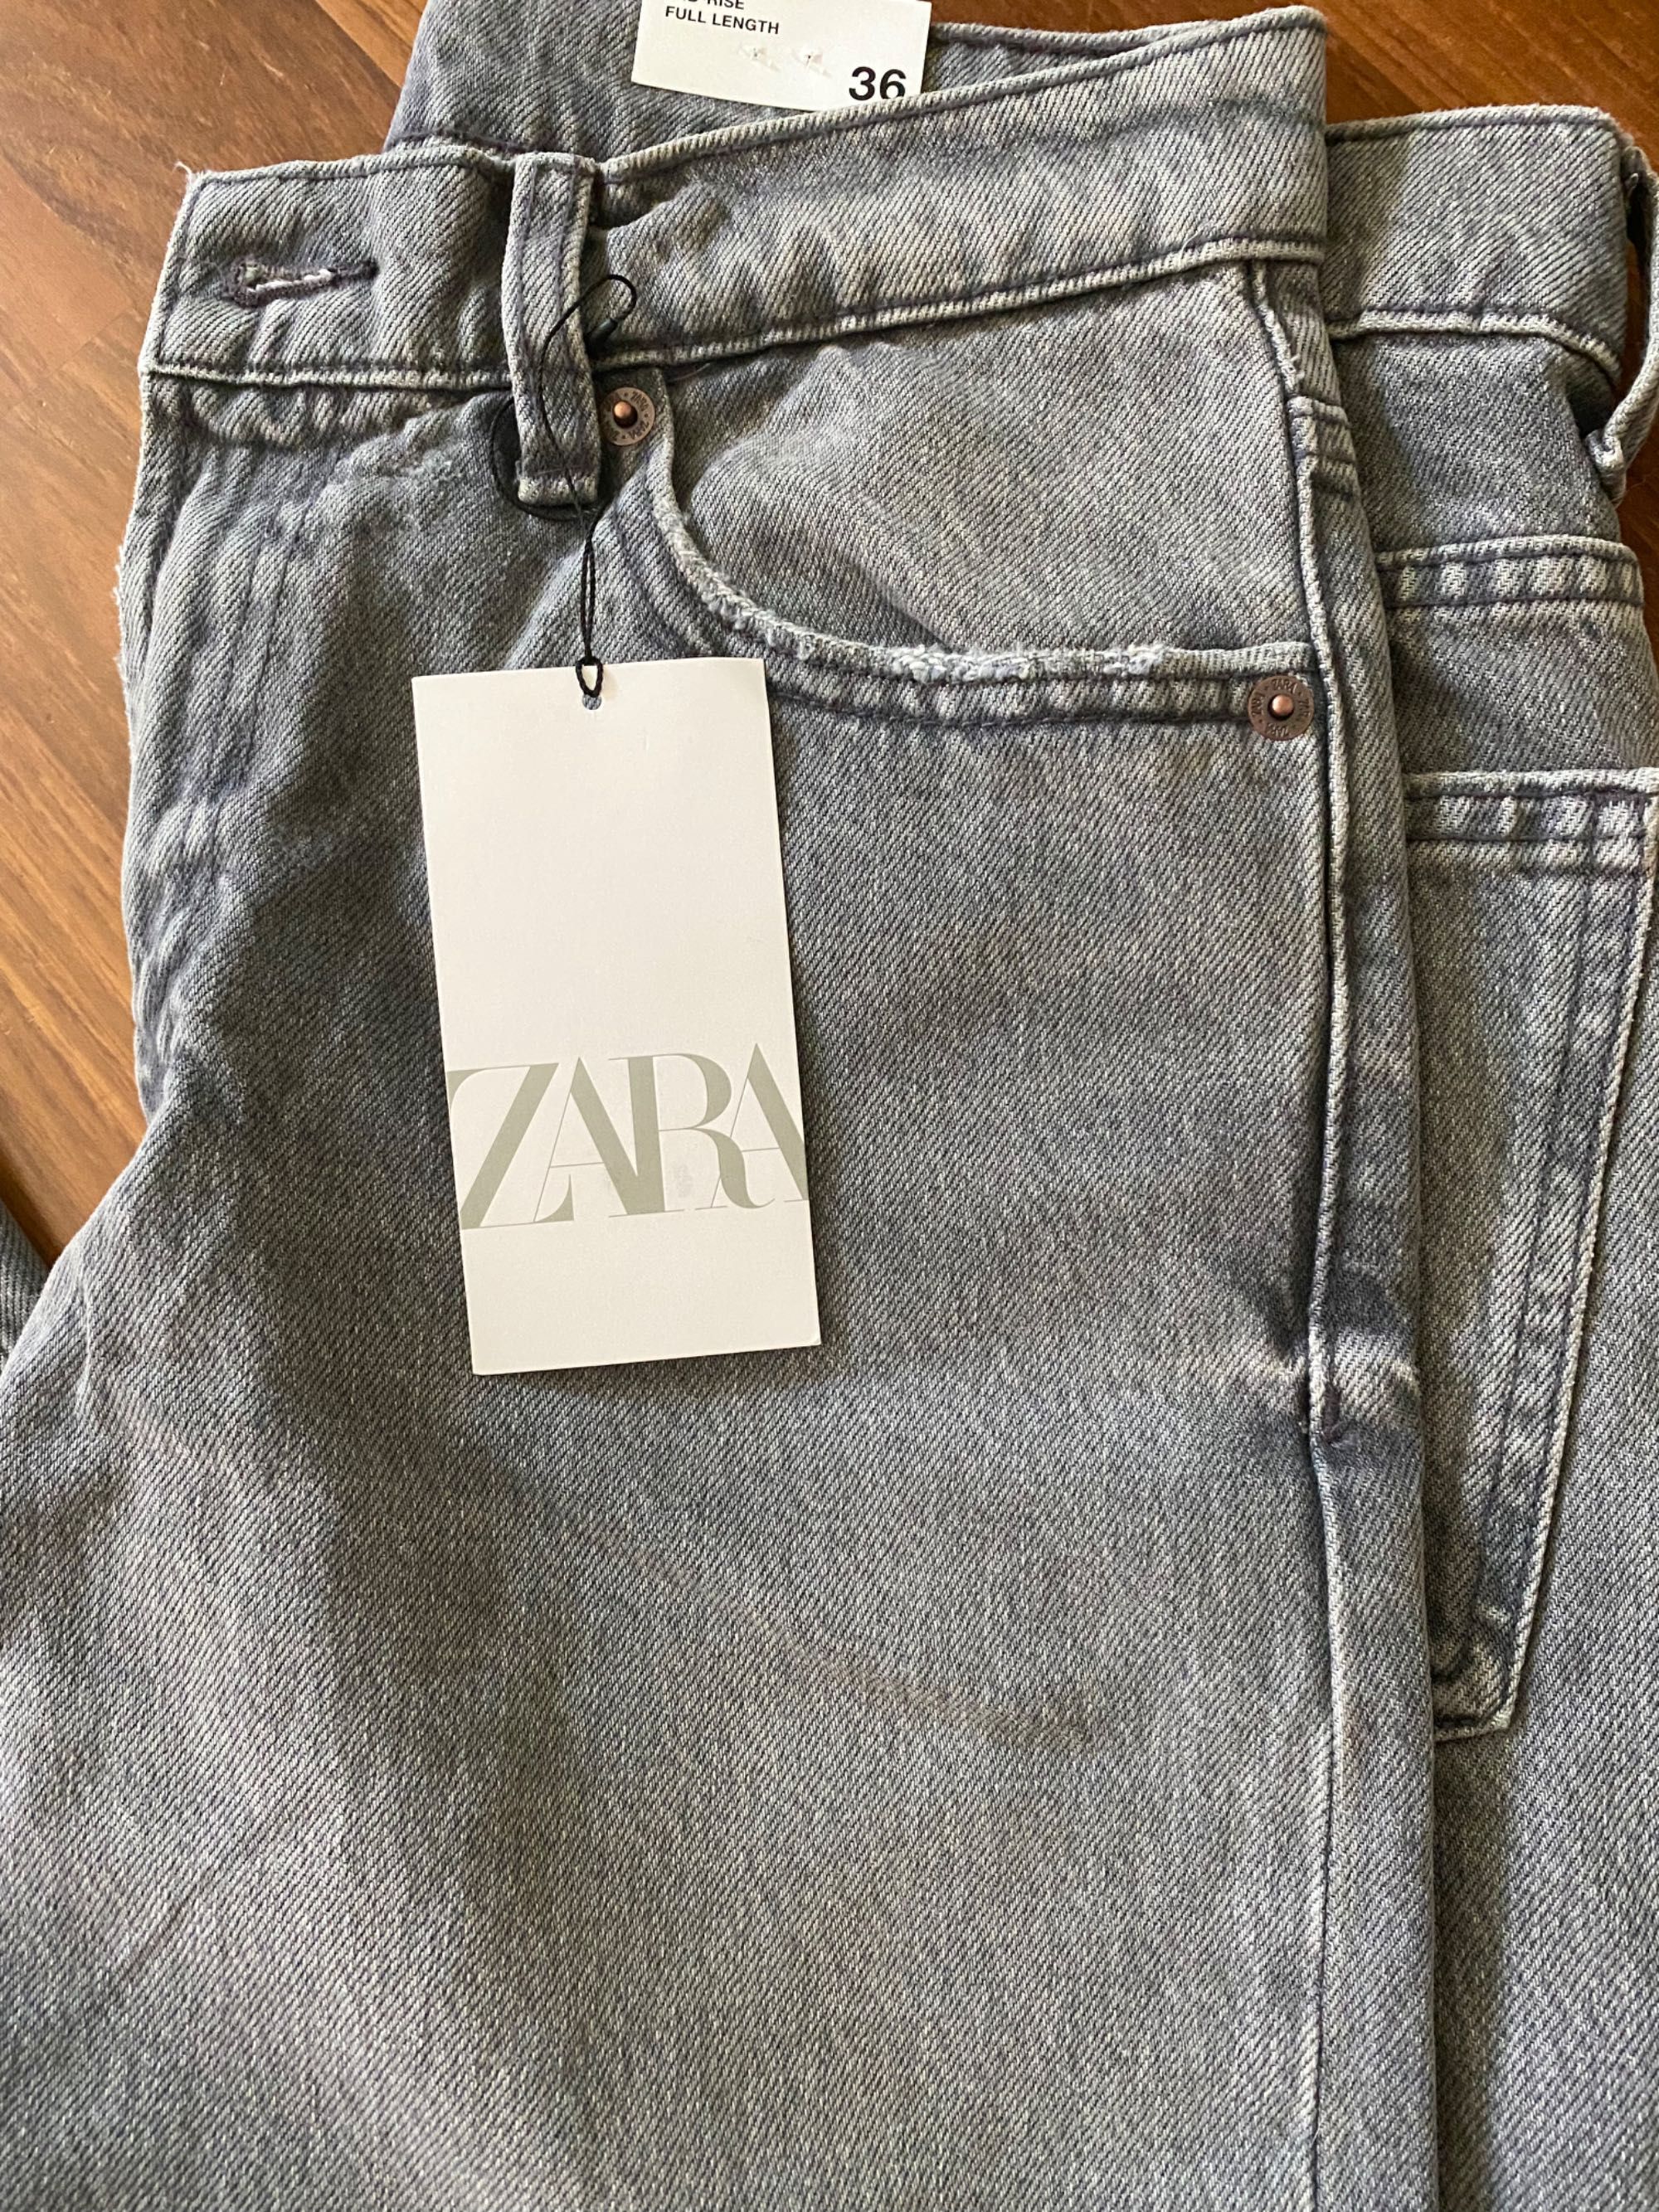 Нові джинси Зара, 36 розмір